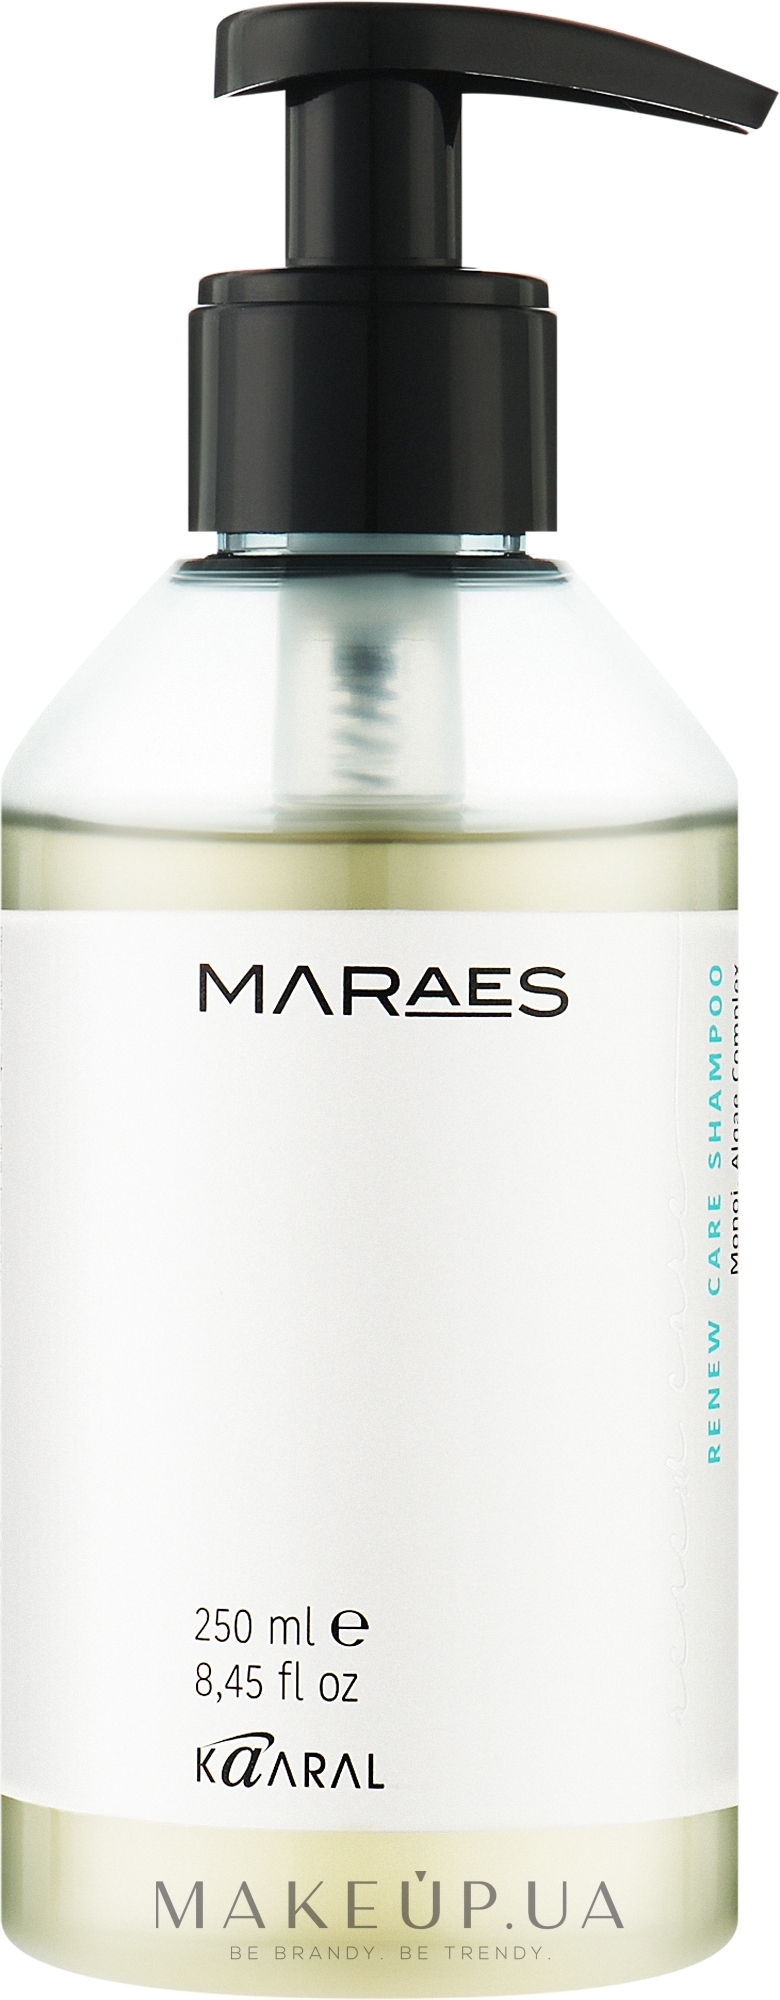 Шампунь для восстановления волос с комплексом водорослей - Kaaral Maraes Renew Care Shampoo — фото 250ml